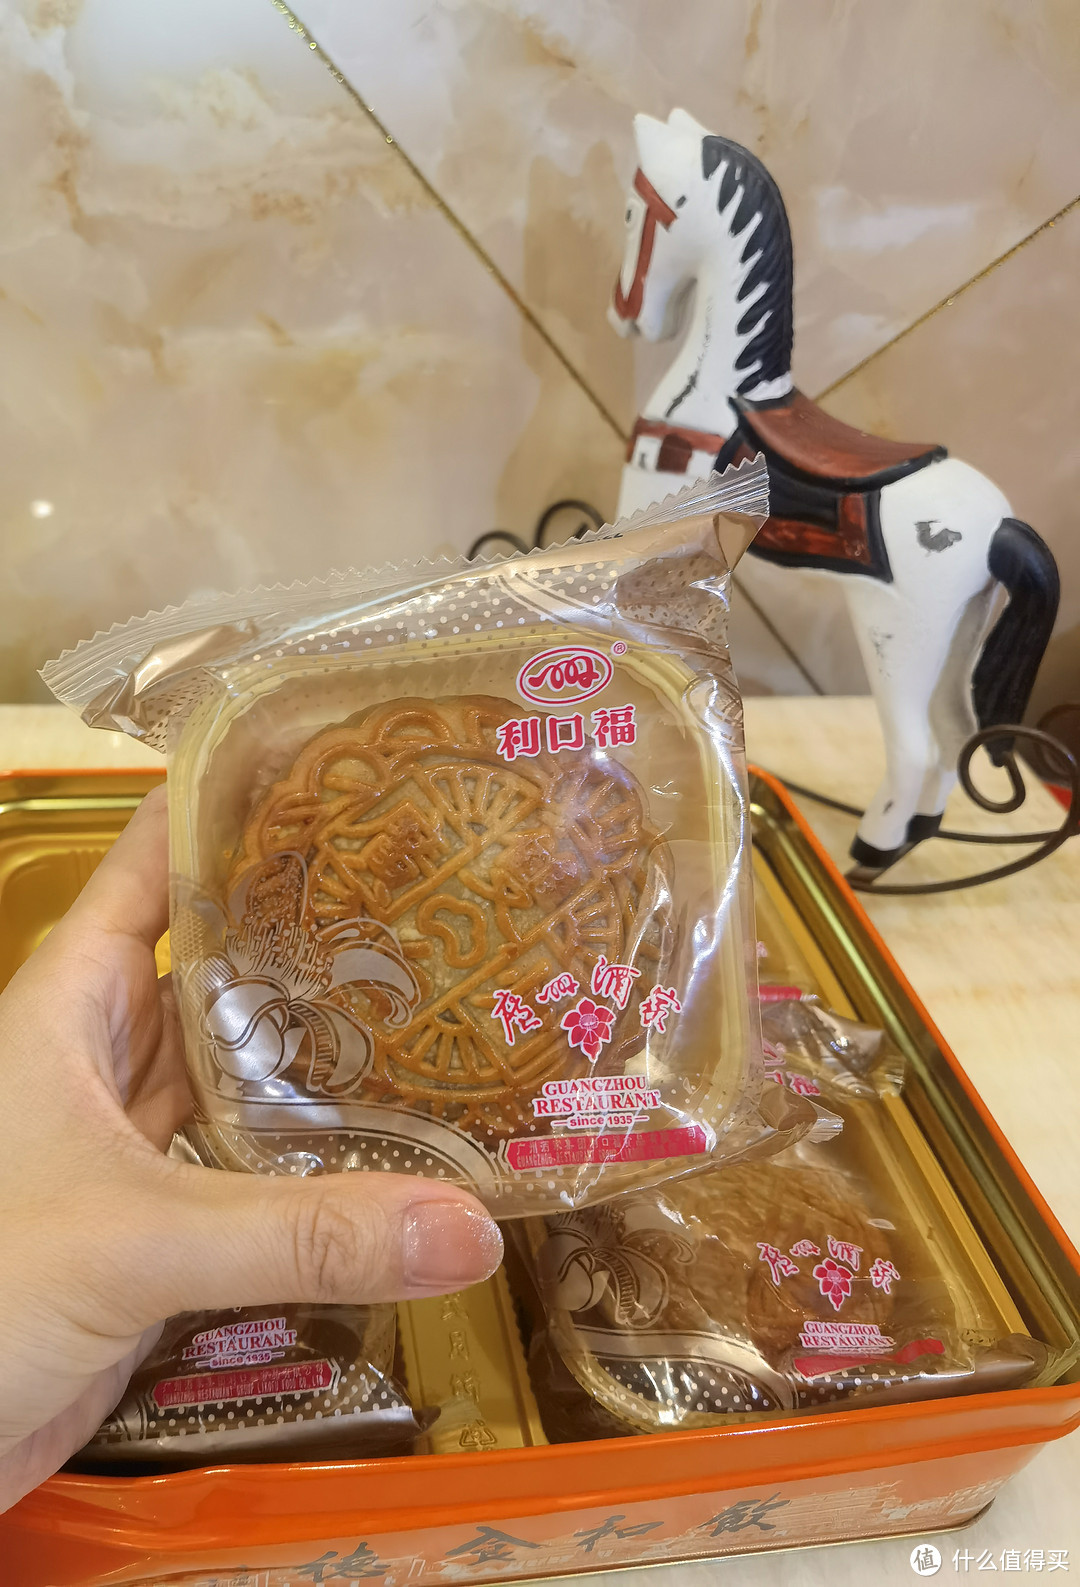 回归月饼的本质、吃点好的——广州酒家双黄莲蓉月饼